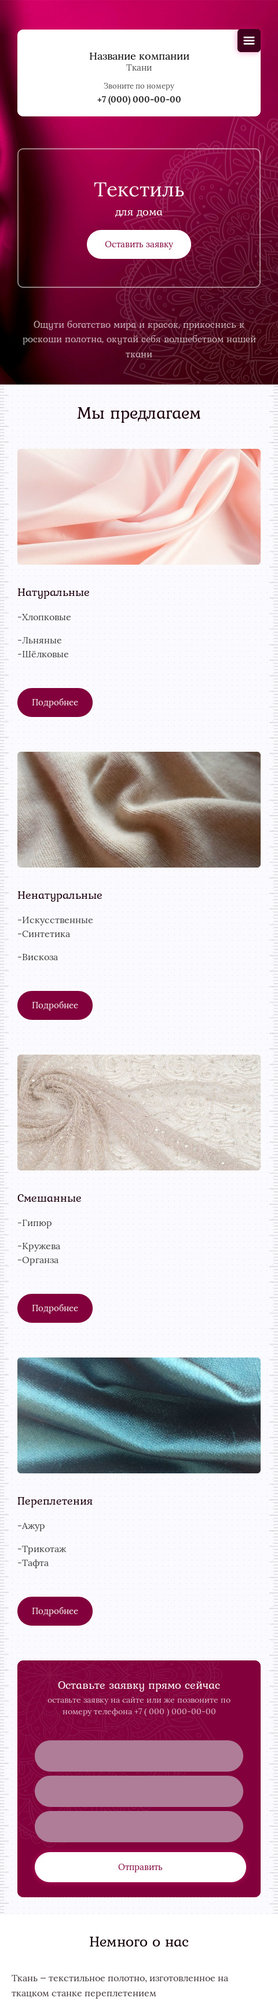 Готовый Сайт-Бизнес № 2508230 - Текстиль для дома (Мобильная версия)